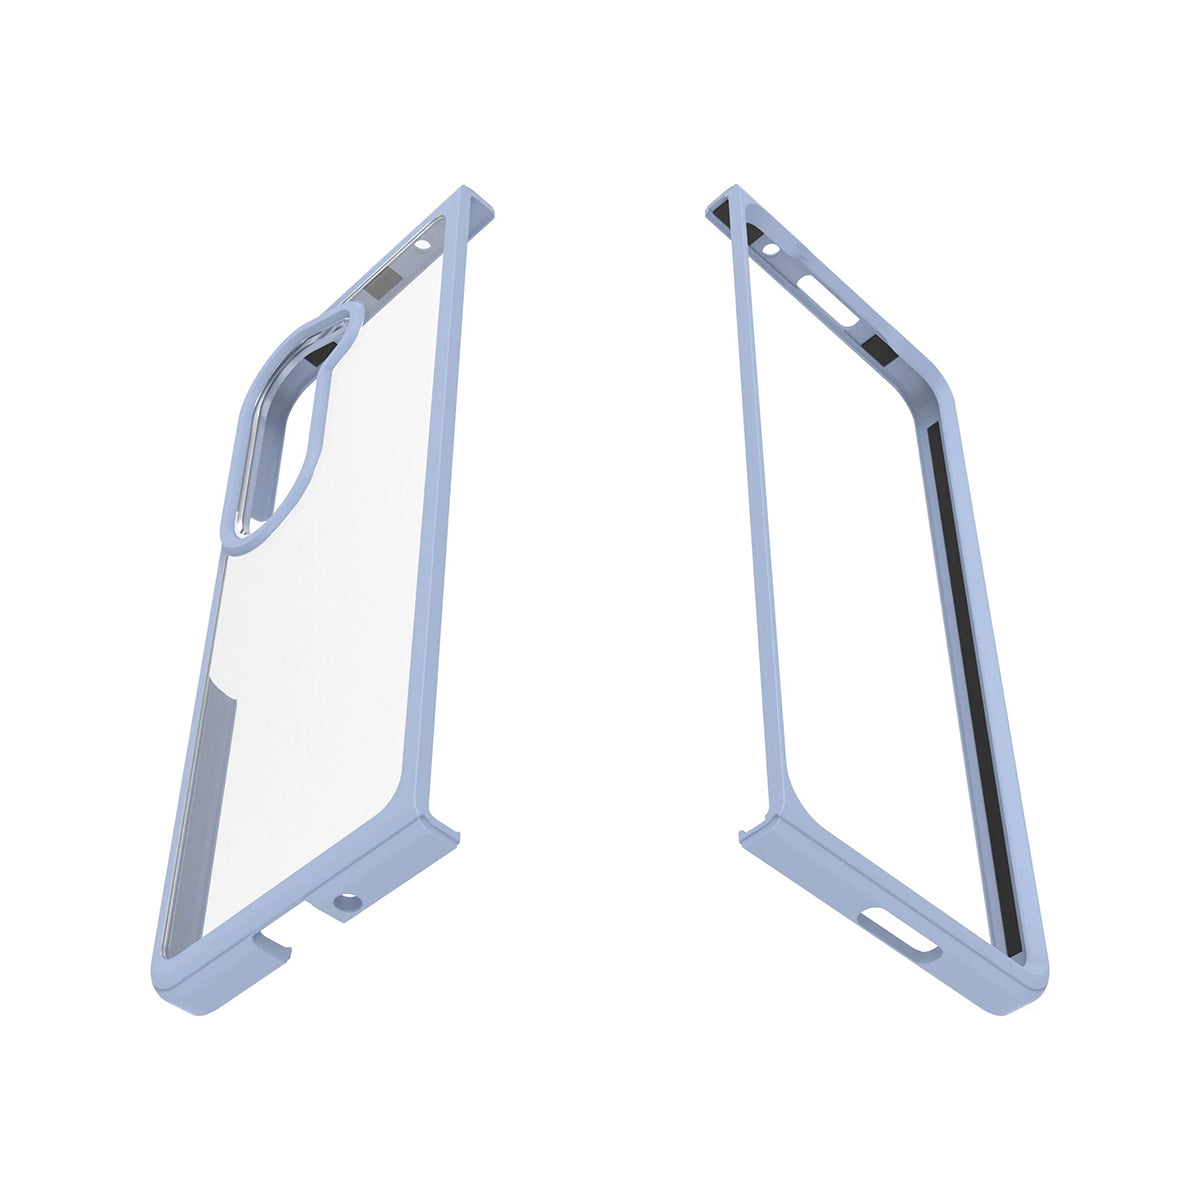 Otterbox Thin flex Phone case for Galaxy Fold 5 - Blue